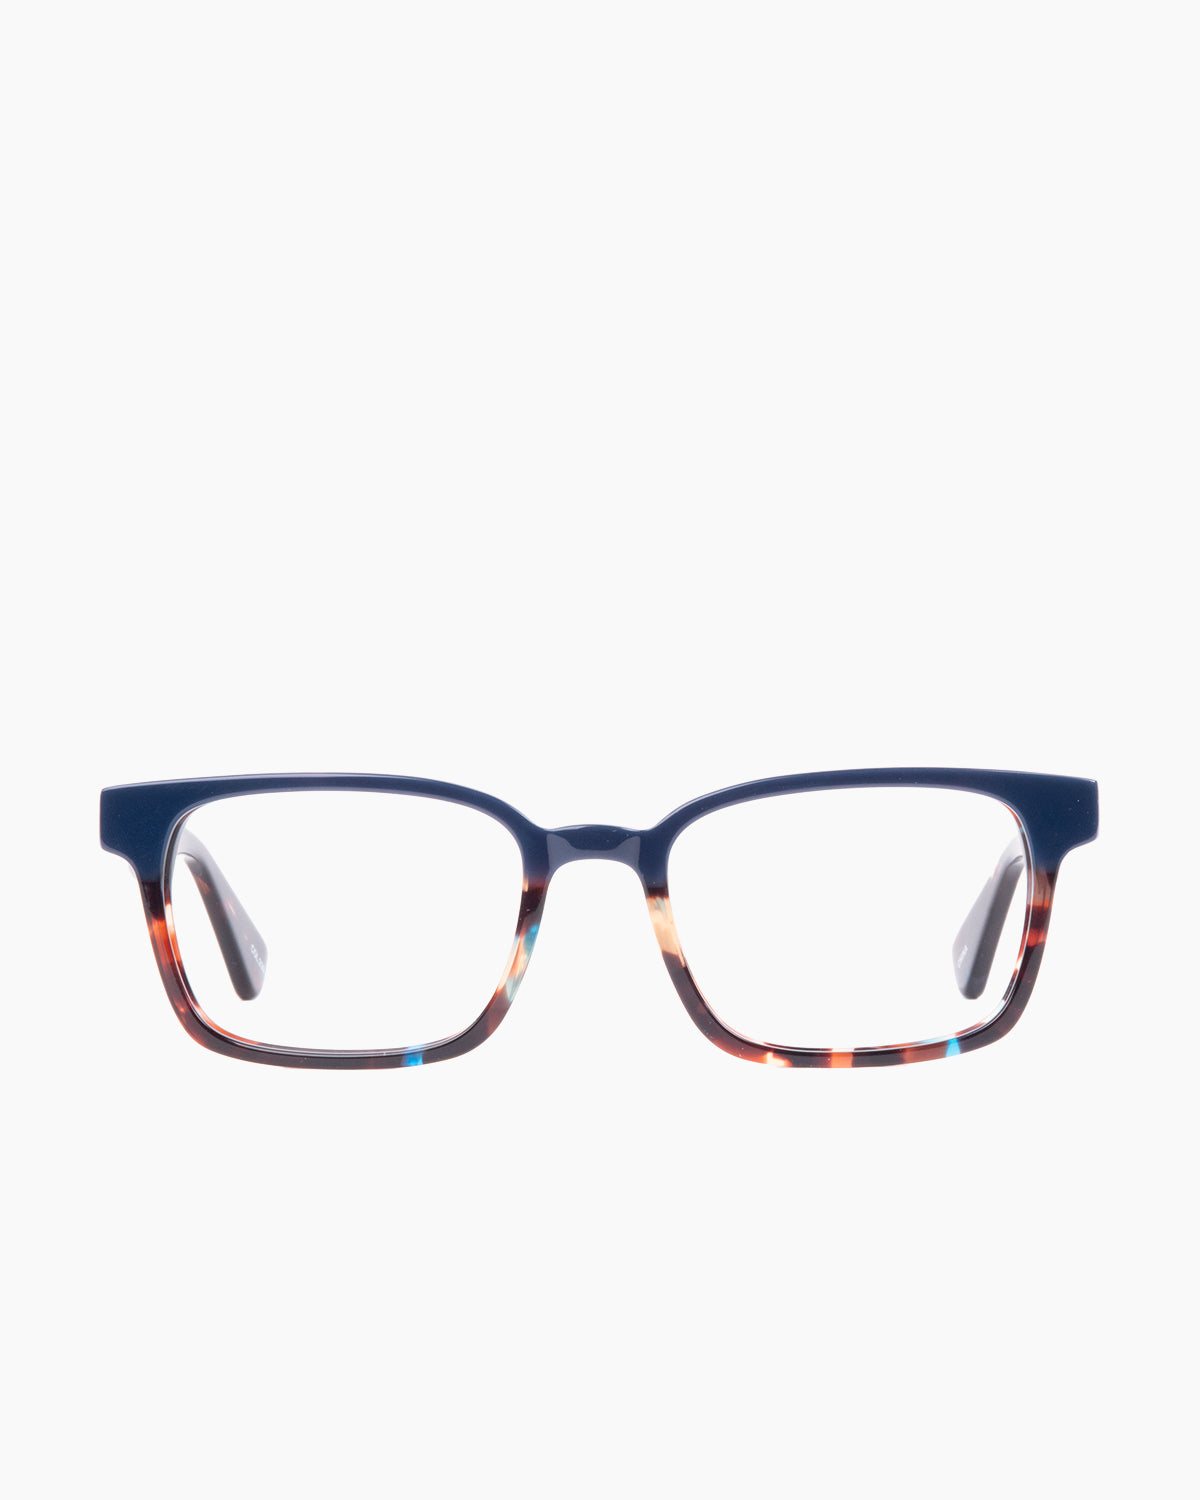 Evolve - Russel - 239 | Bar à lunettes:  Marie-Sophie Dion